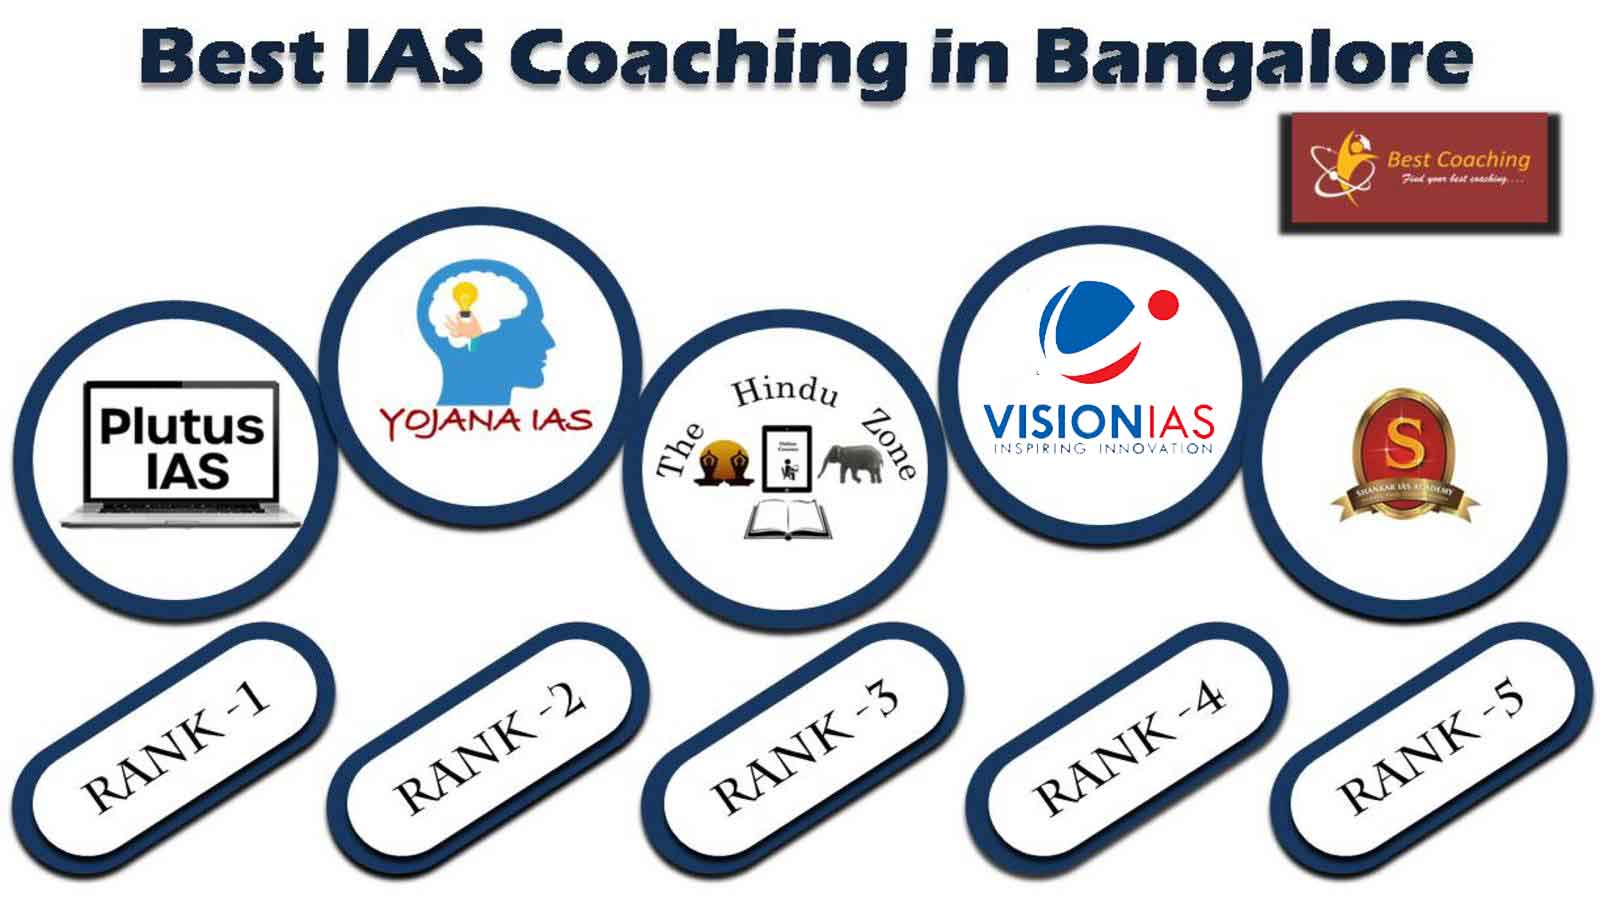 Best IAS Coaching Institute in Bangalore